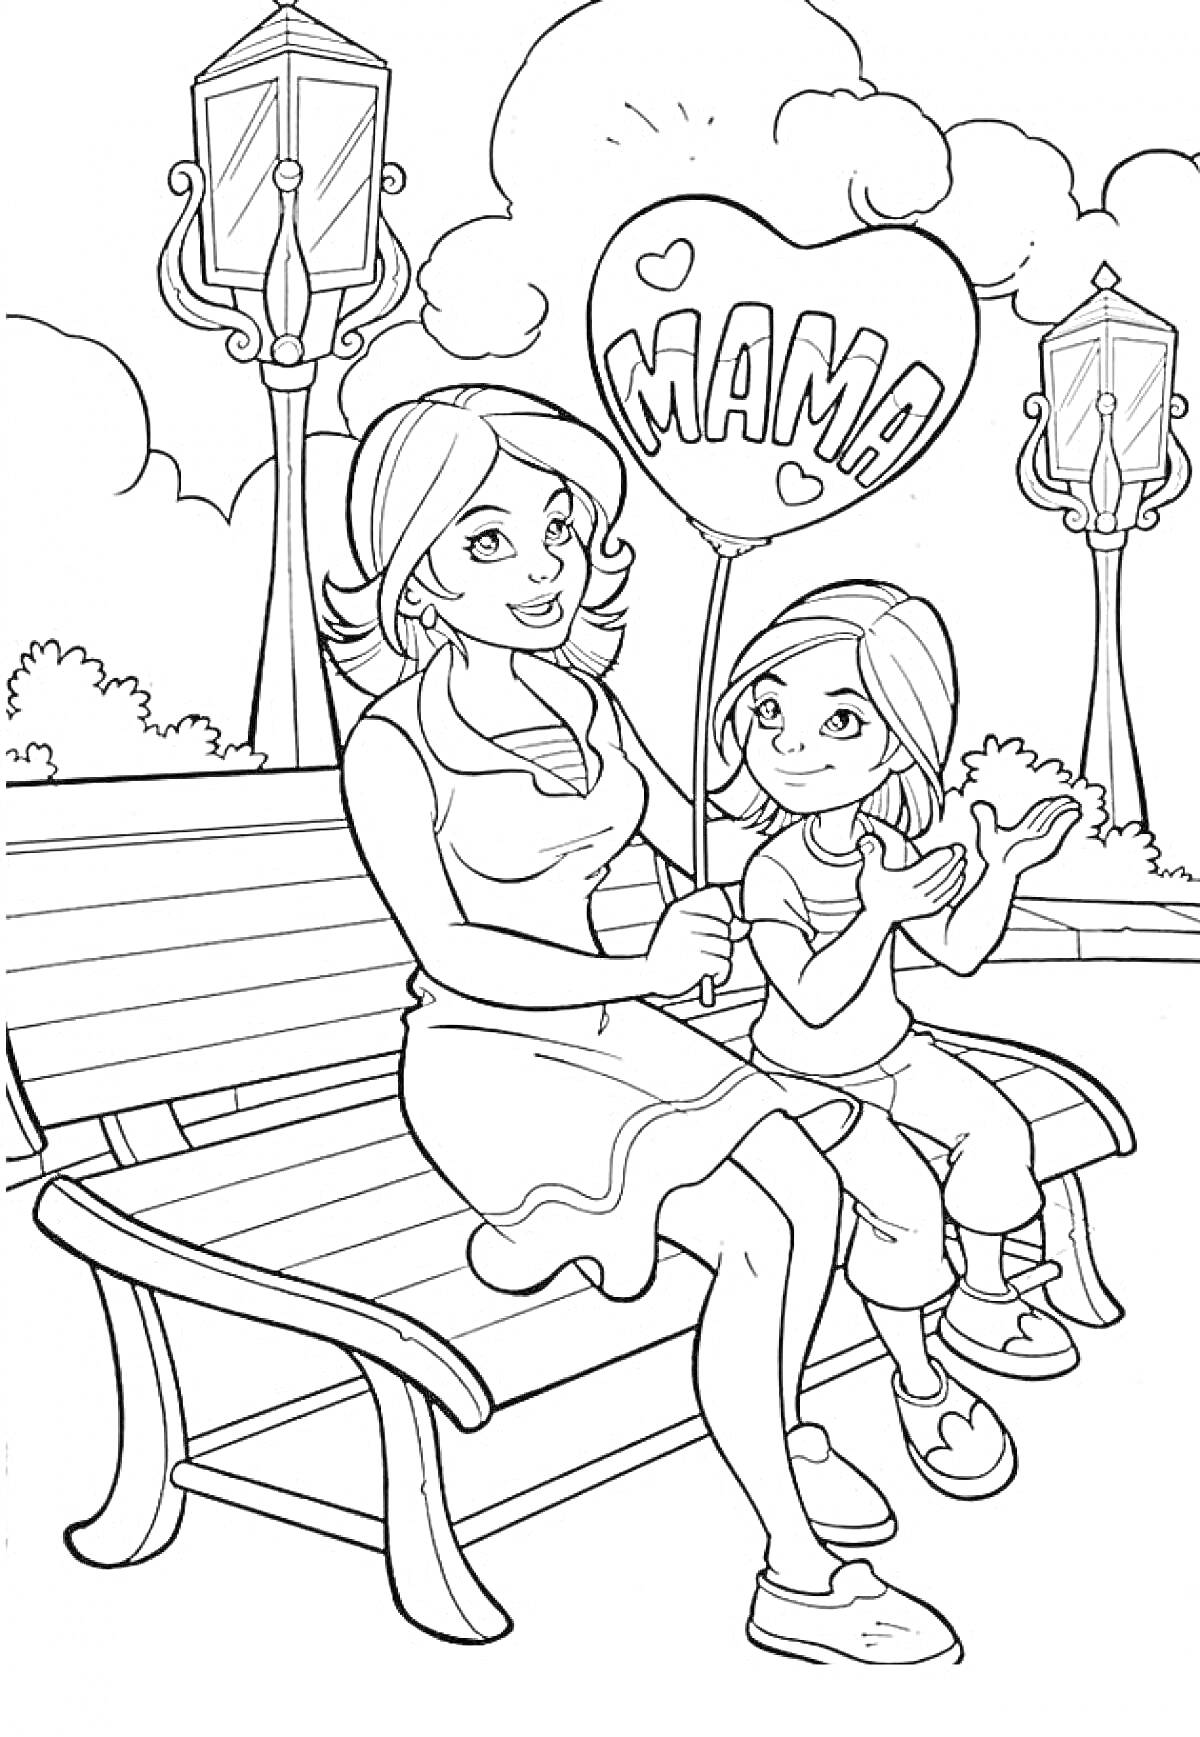 Раскраска Мама и дочка на скамейке в парке с воздушным шаром